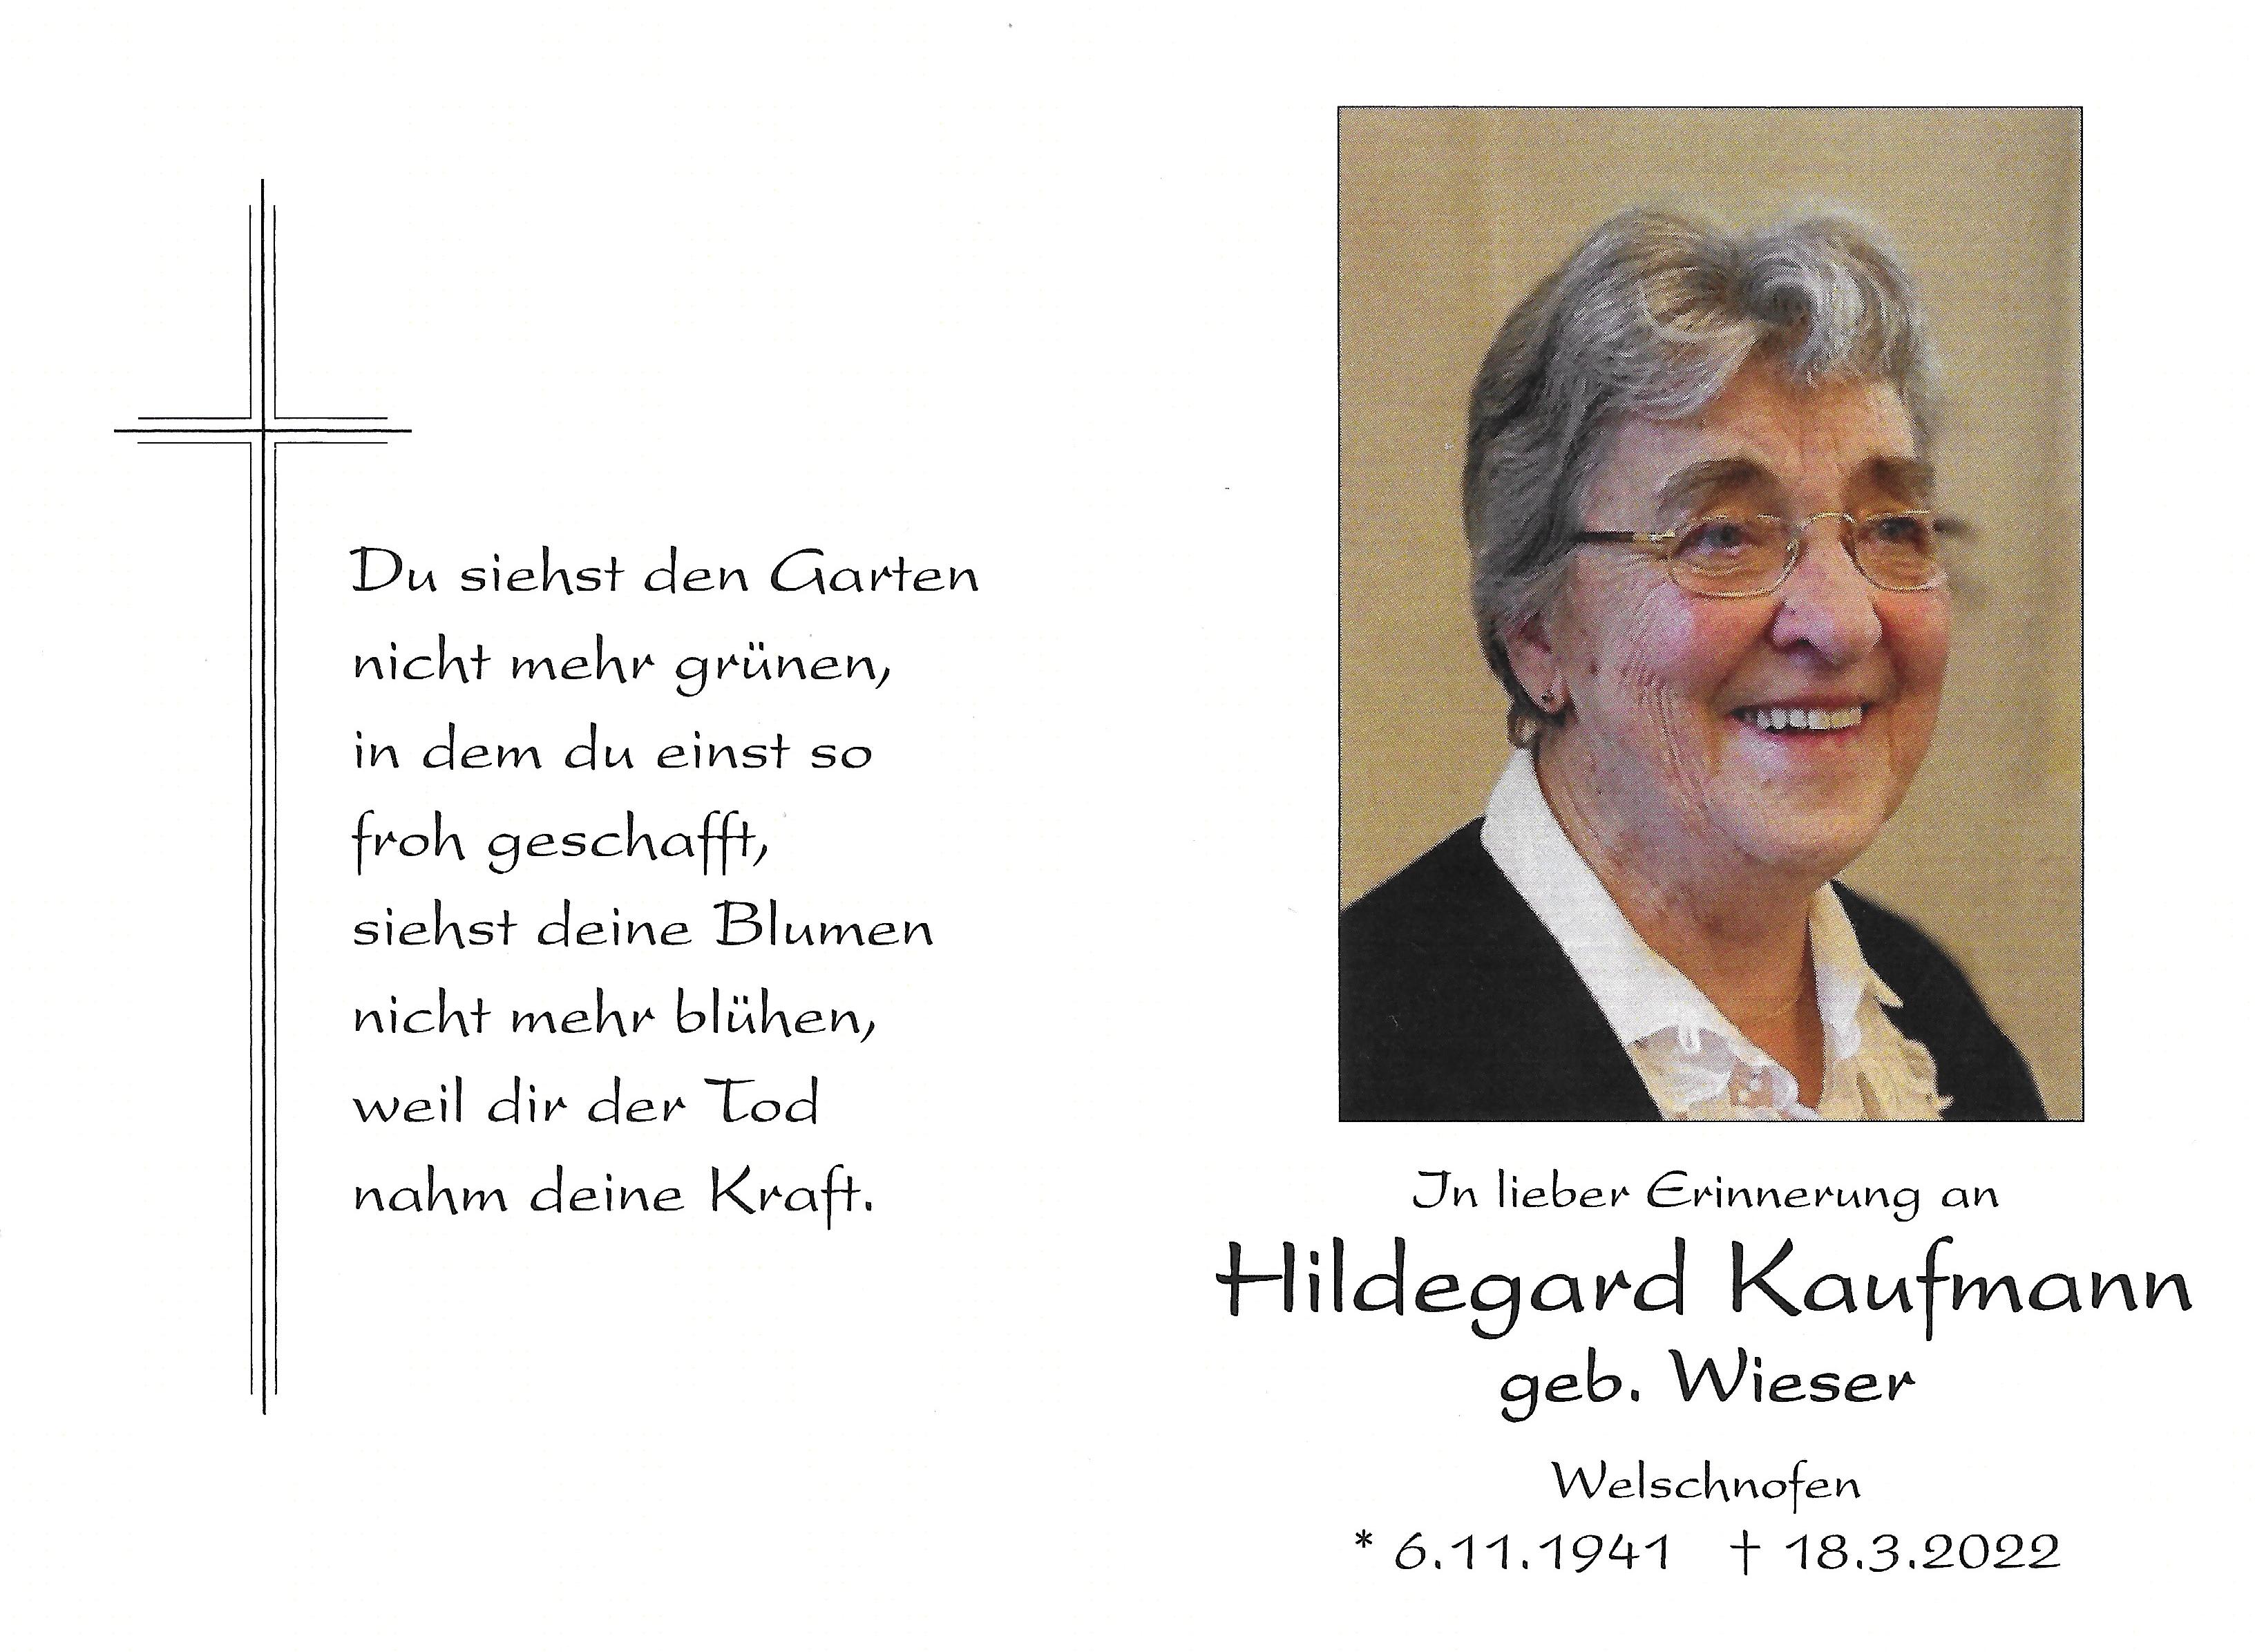 Hildegard Wieser Kaufmann